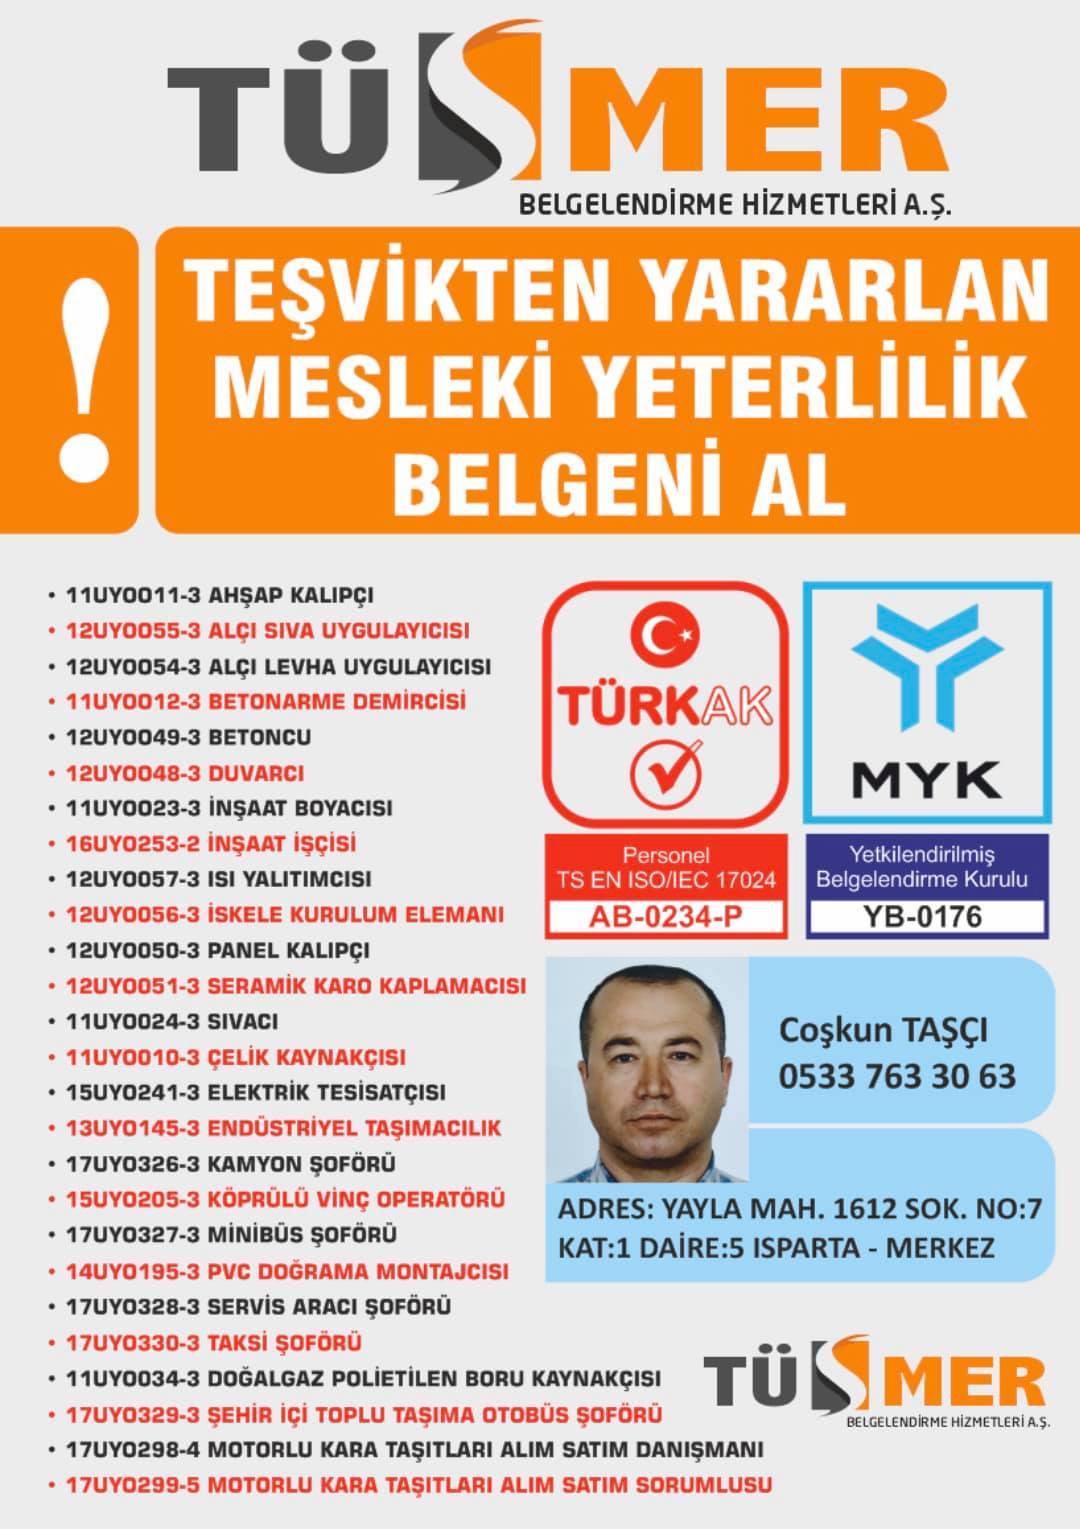 MYK MESLEKİ YETERLİLİK BELGESİ Vişnezade Beşiktaş İstanbul